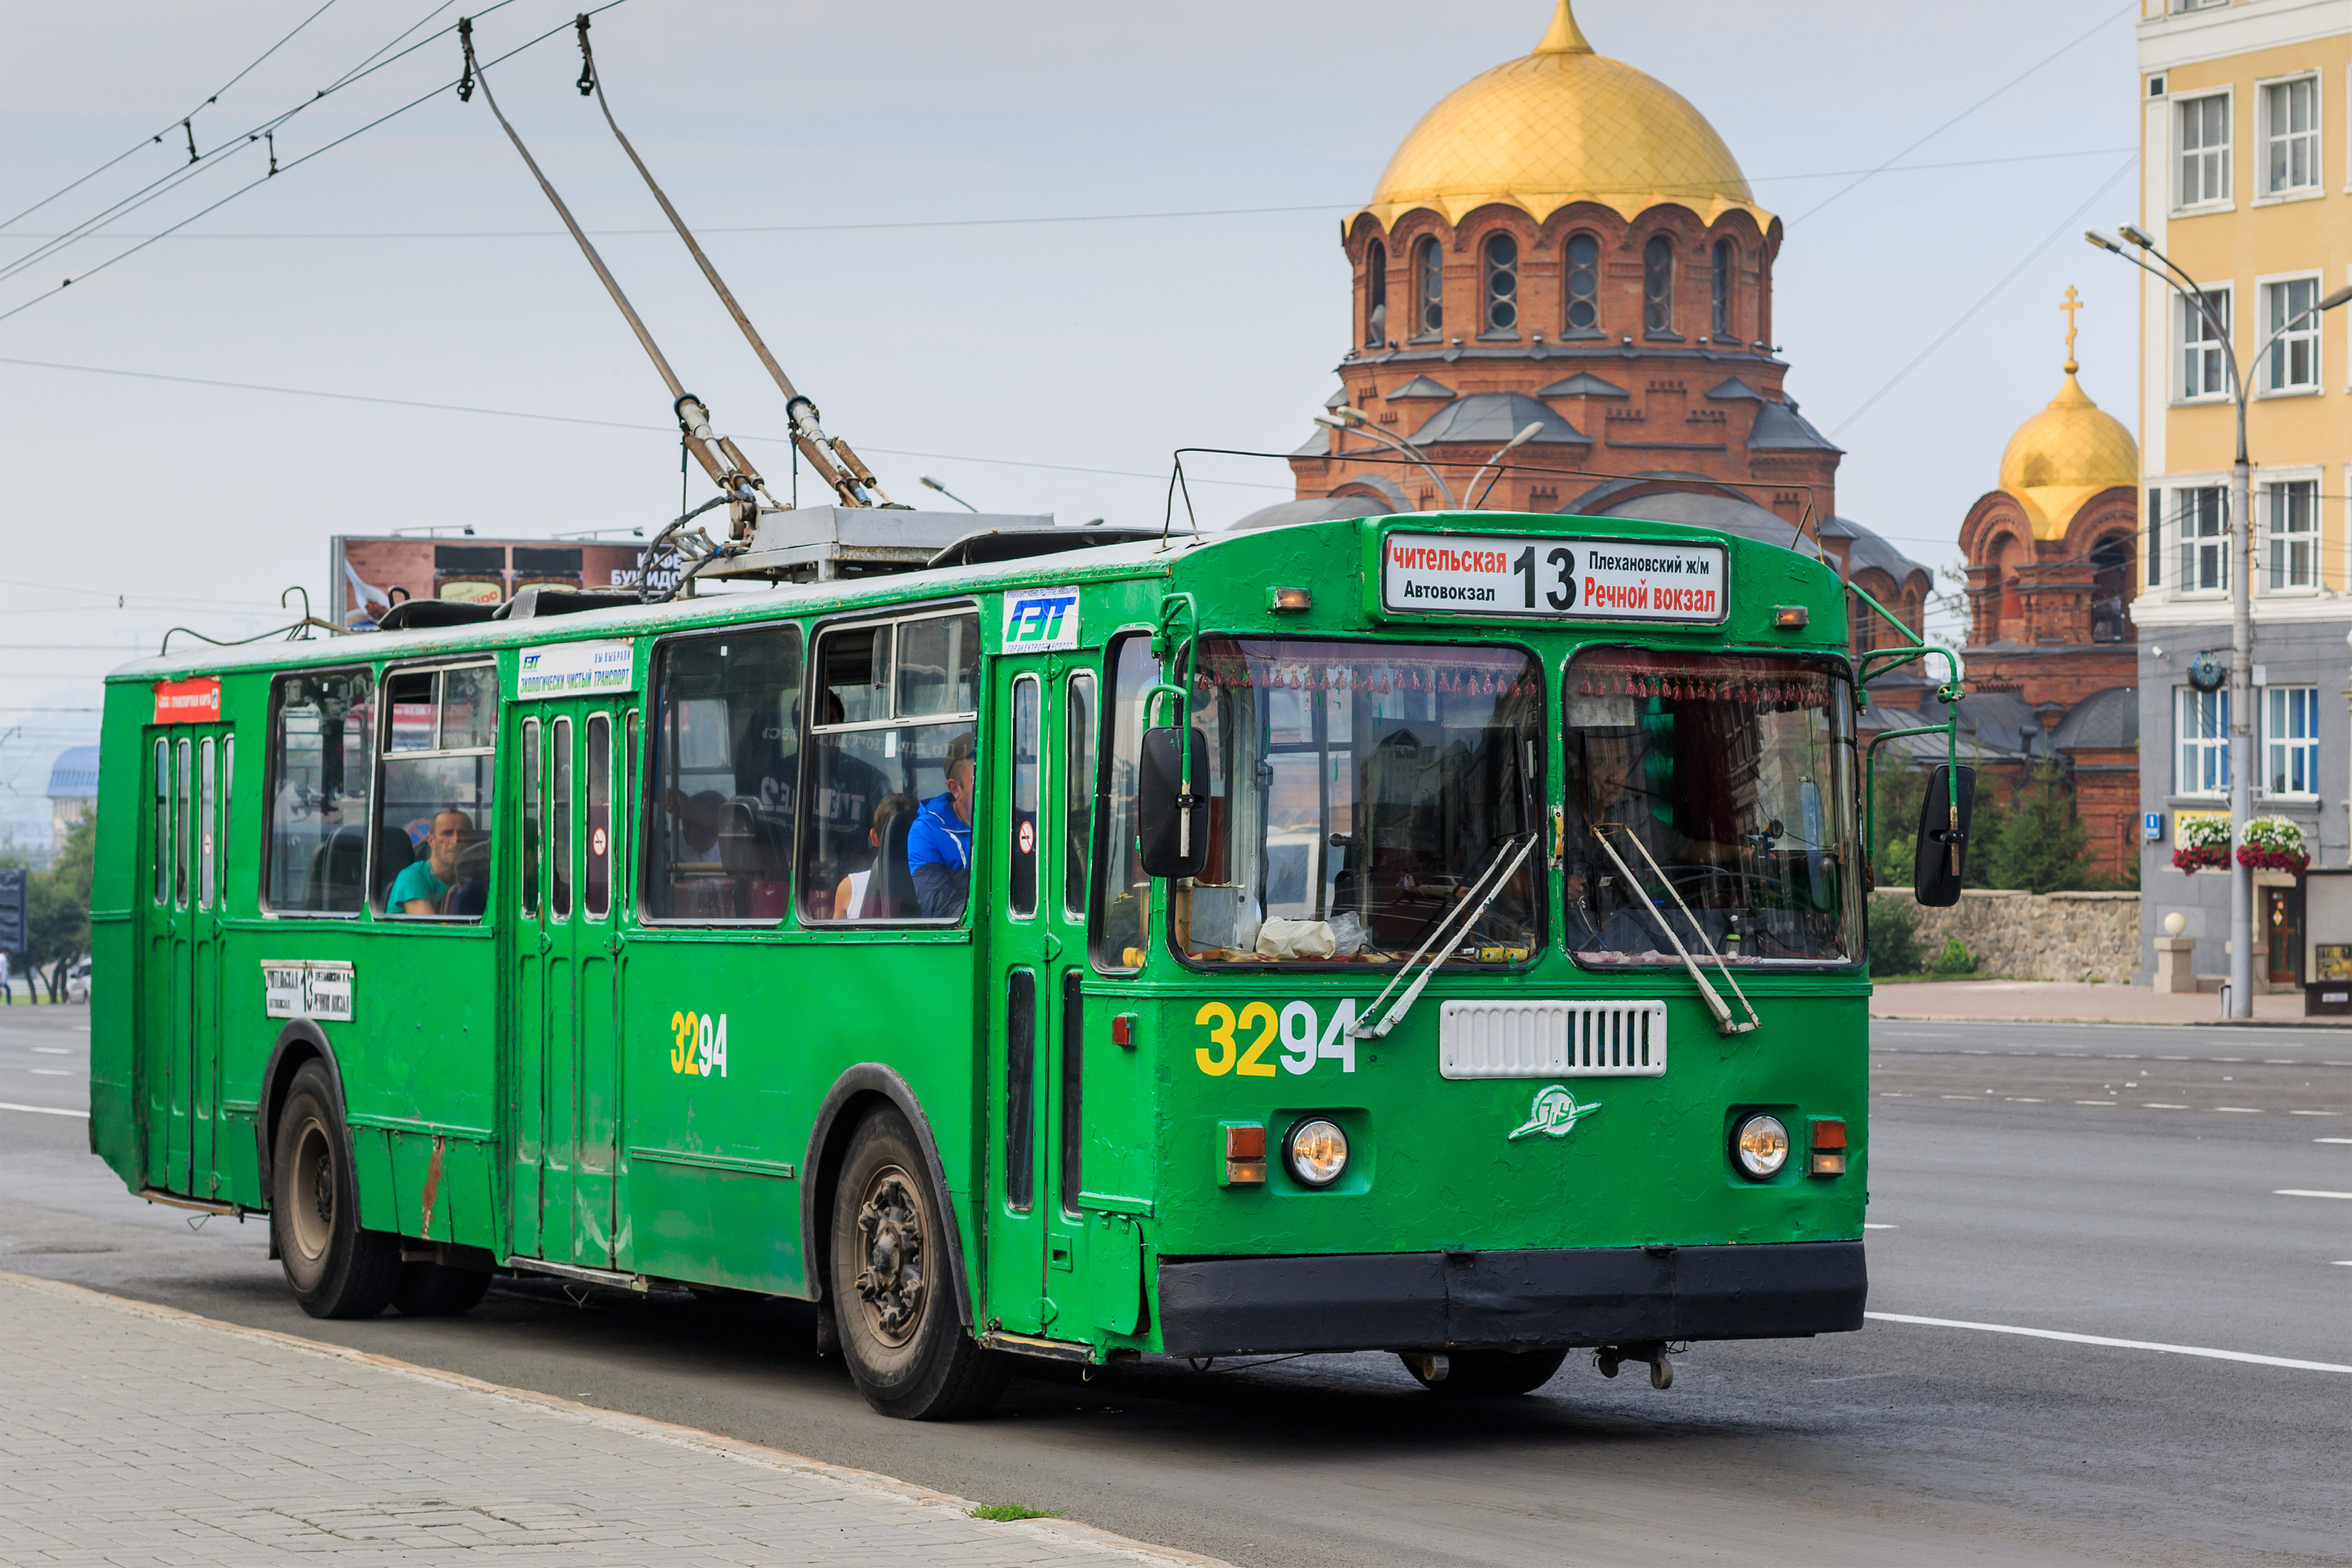 Novosibirsk KrasnyProspekt trolley 07-2016 img1